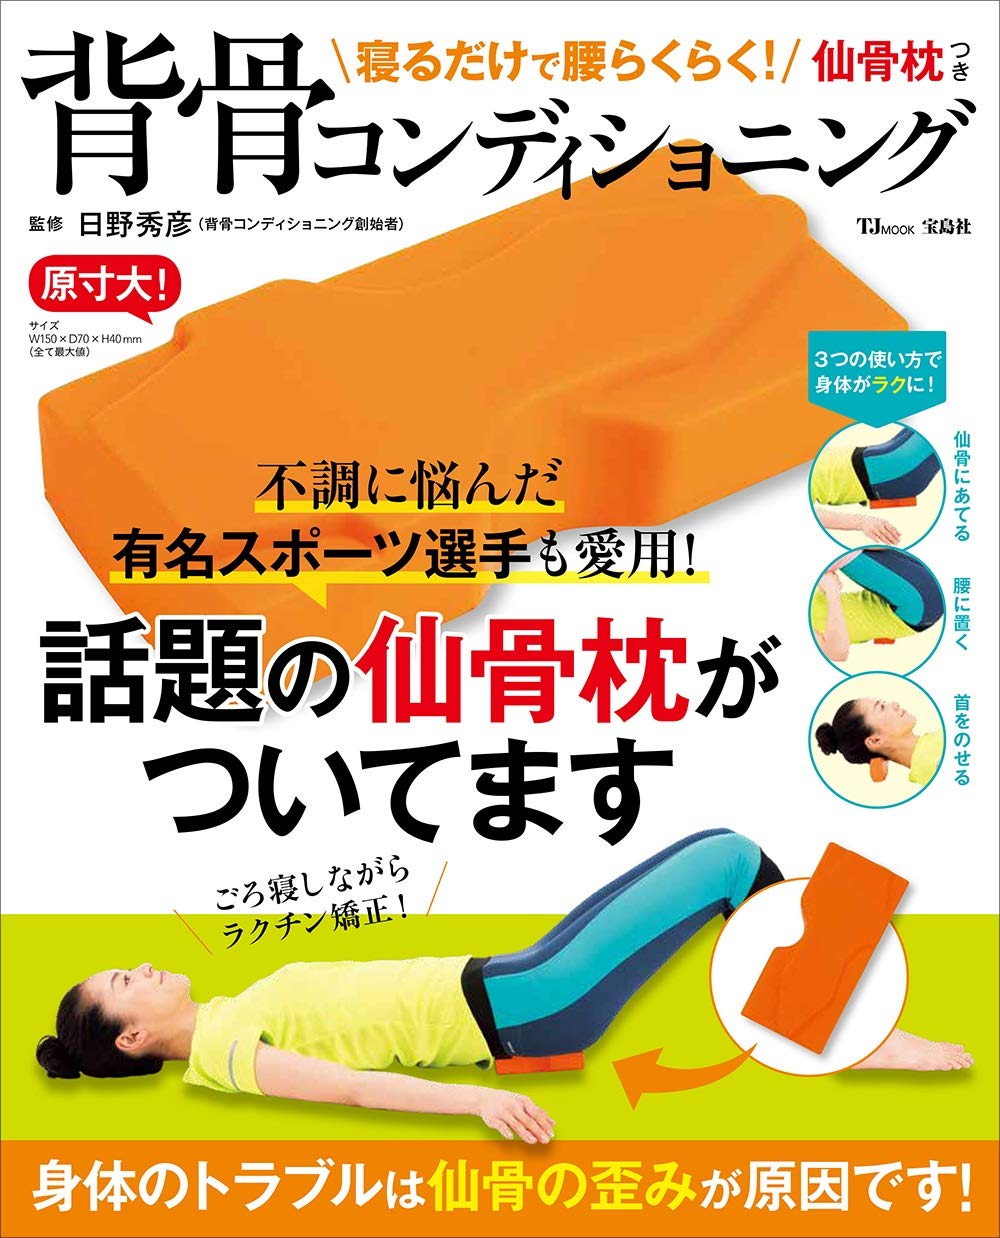 新刊案内 寝るだけで腰痛 不調が消える 仙骨枕 つき本が売れています 株式会社 宝島社のプレスリリース